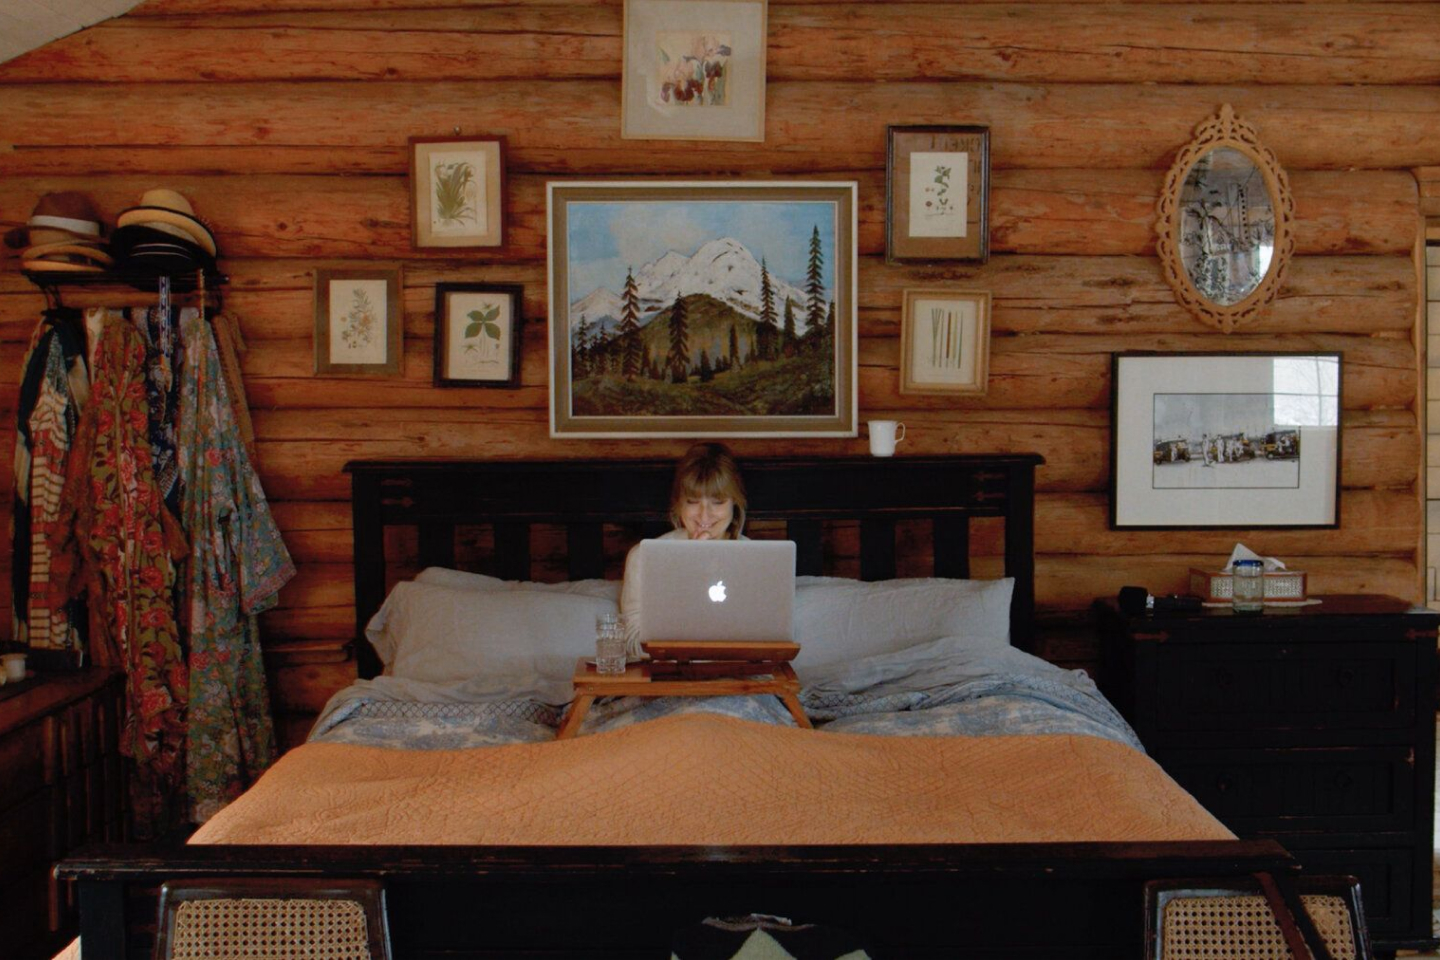 Personne travaillant sur un MacBook dans son lit, dans une chambre aux murs en bois